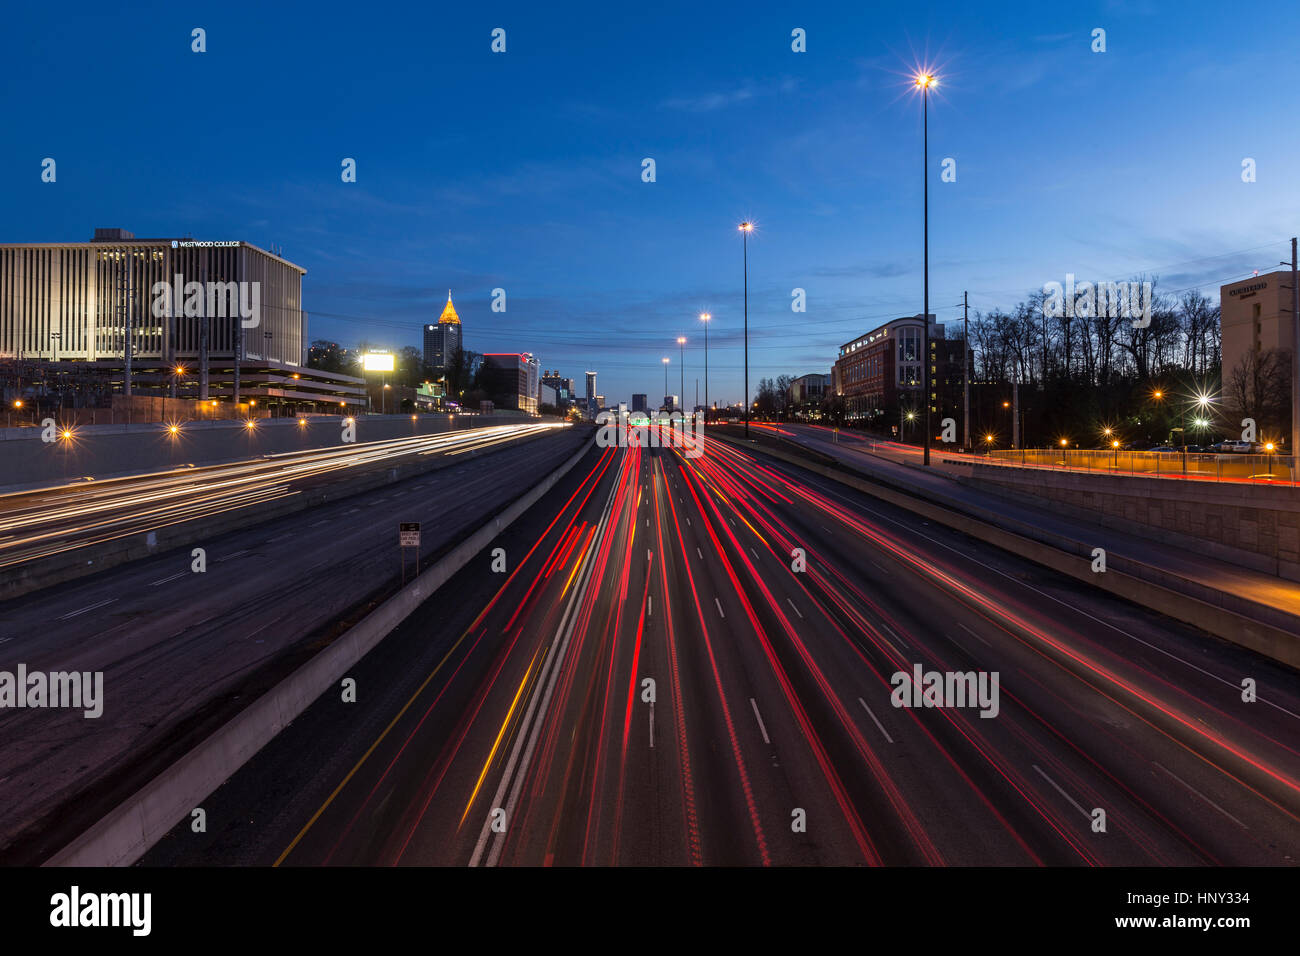 Atlanta, Georgia, USA - 15. Februar 2014: Redaktionelle Nachtansicht von Atlantas beschäftigt Interstate 75 und 85 Autobahnen durch die Innenstadt. Stockfoto